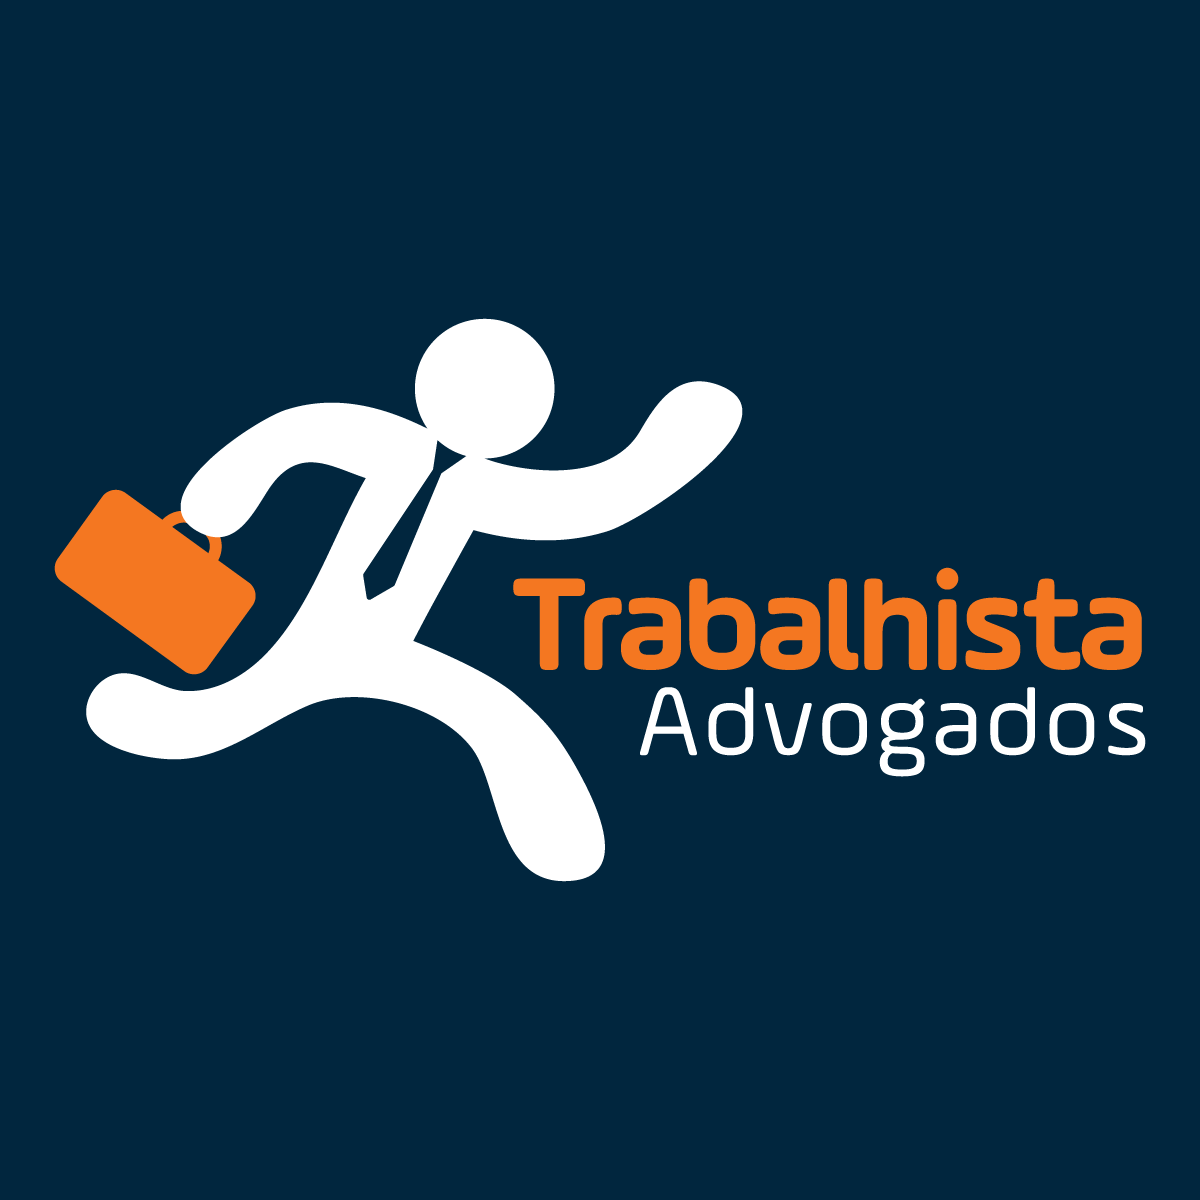 TRABALHISTA ADVOGADOS - Advogados - Causas Trabalhistas - Florianópolis, SC